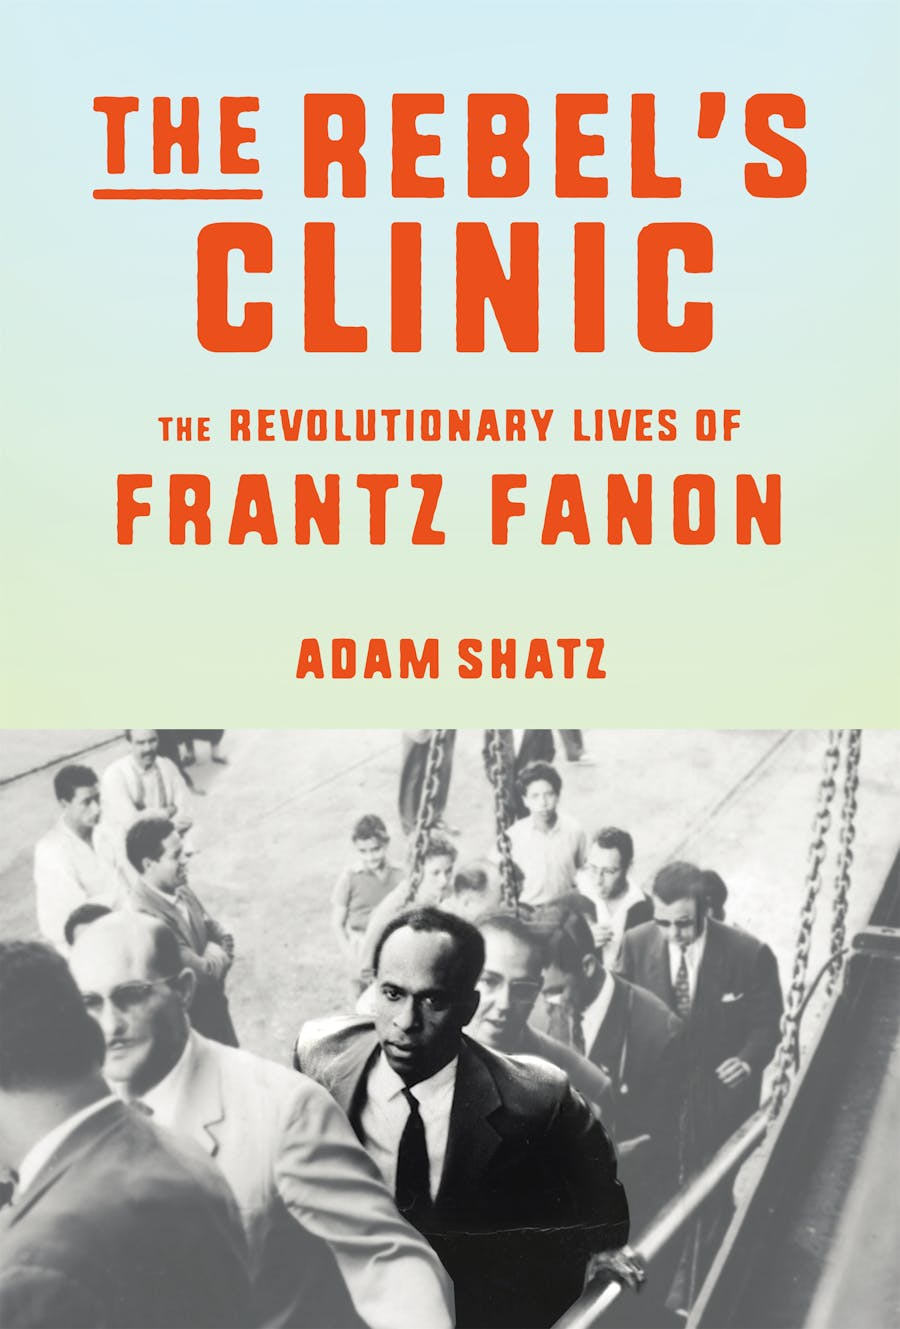 The revolutionary lives of Frantz Fanon